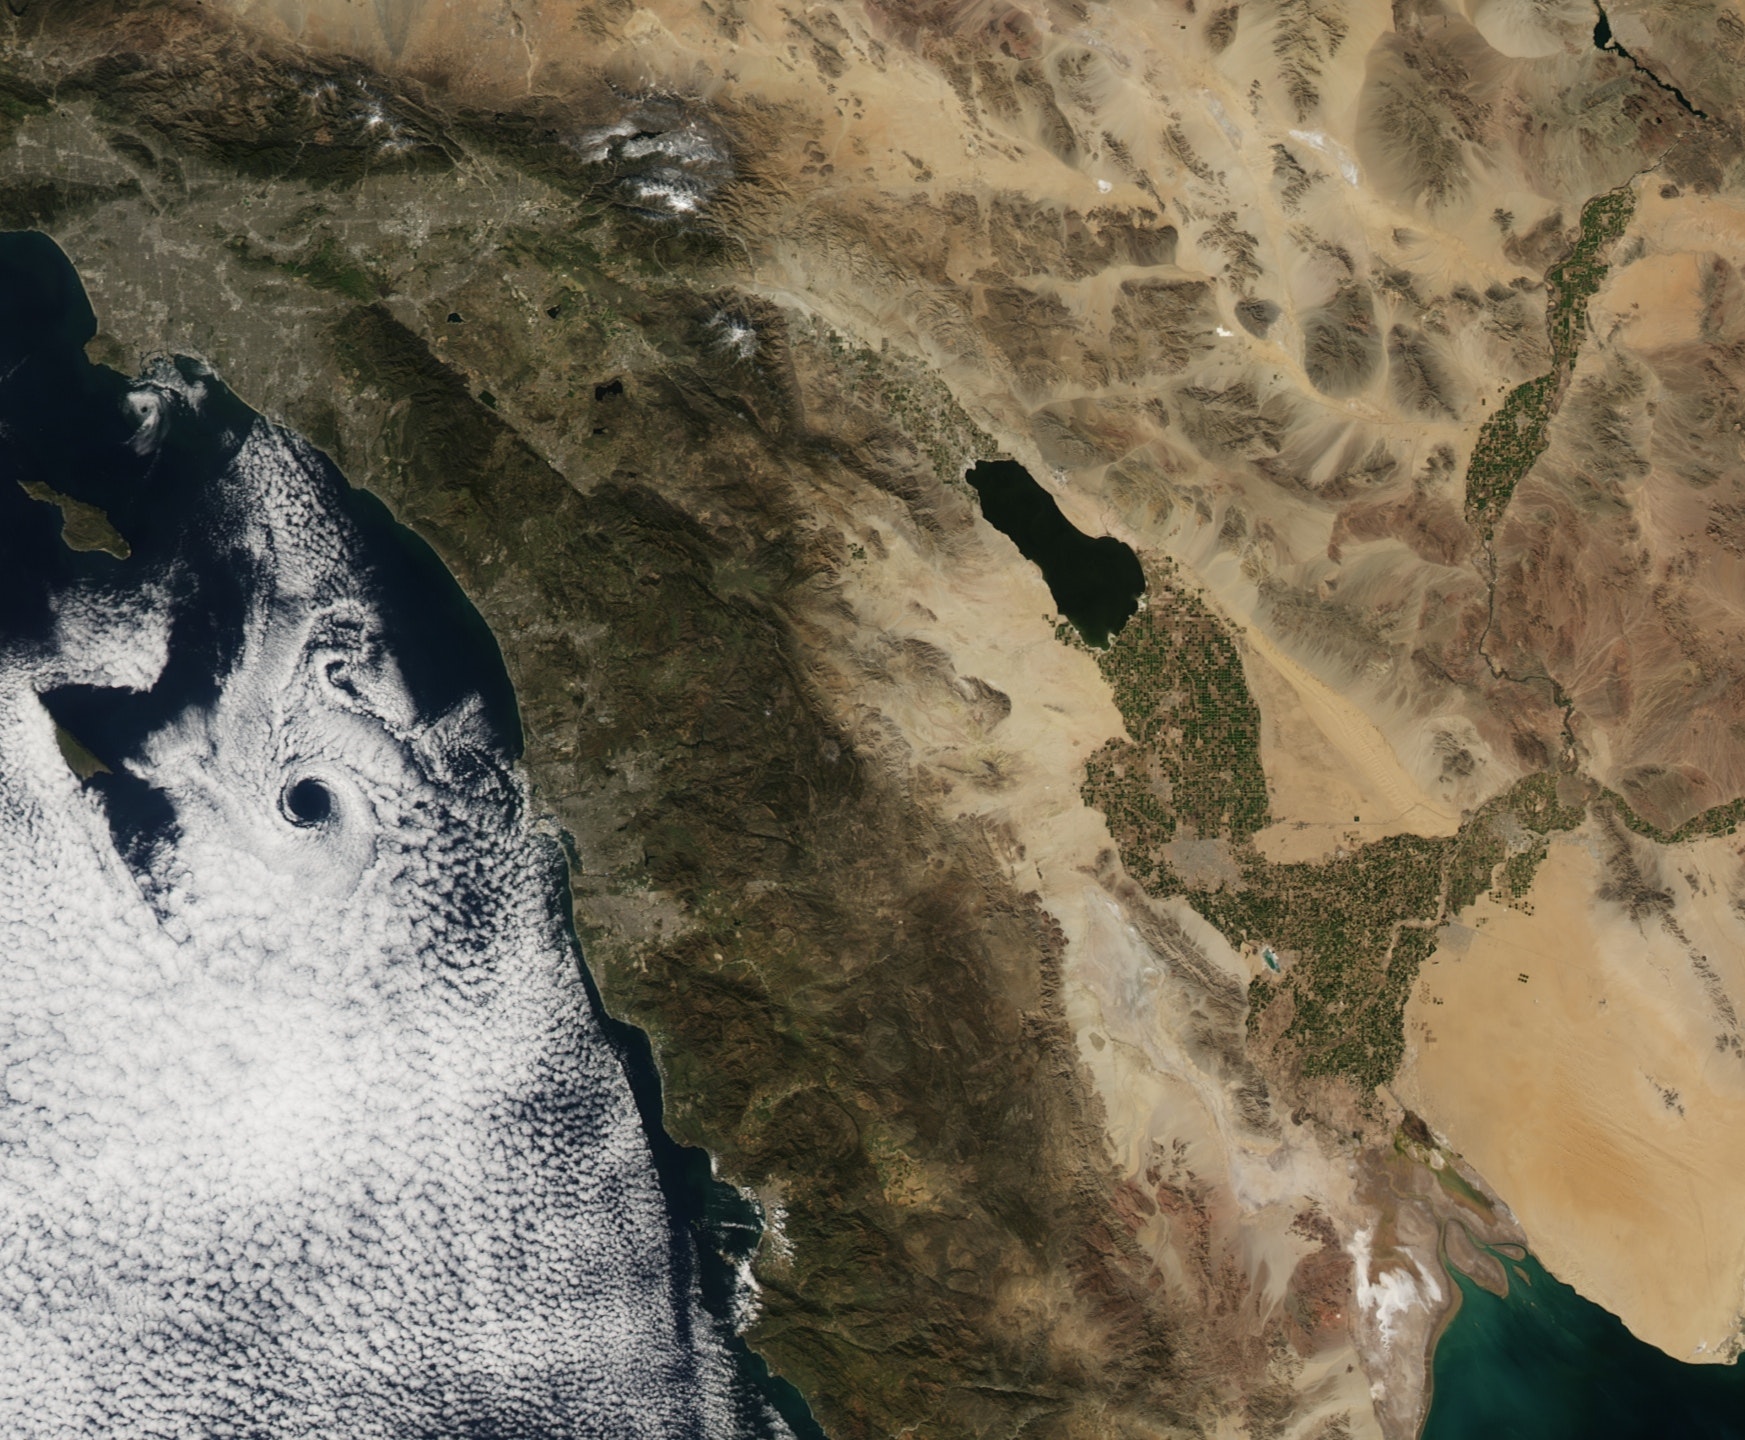 Immagine satellitare del Salton Sea che mostra un'ampia valle